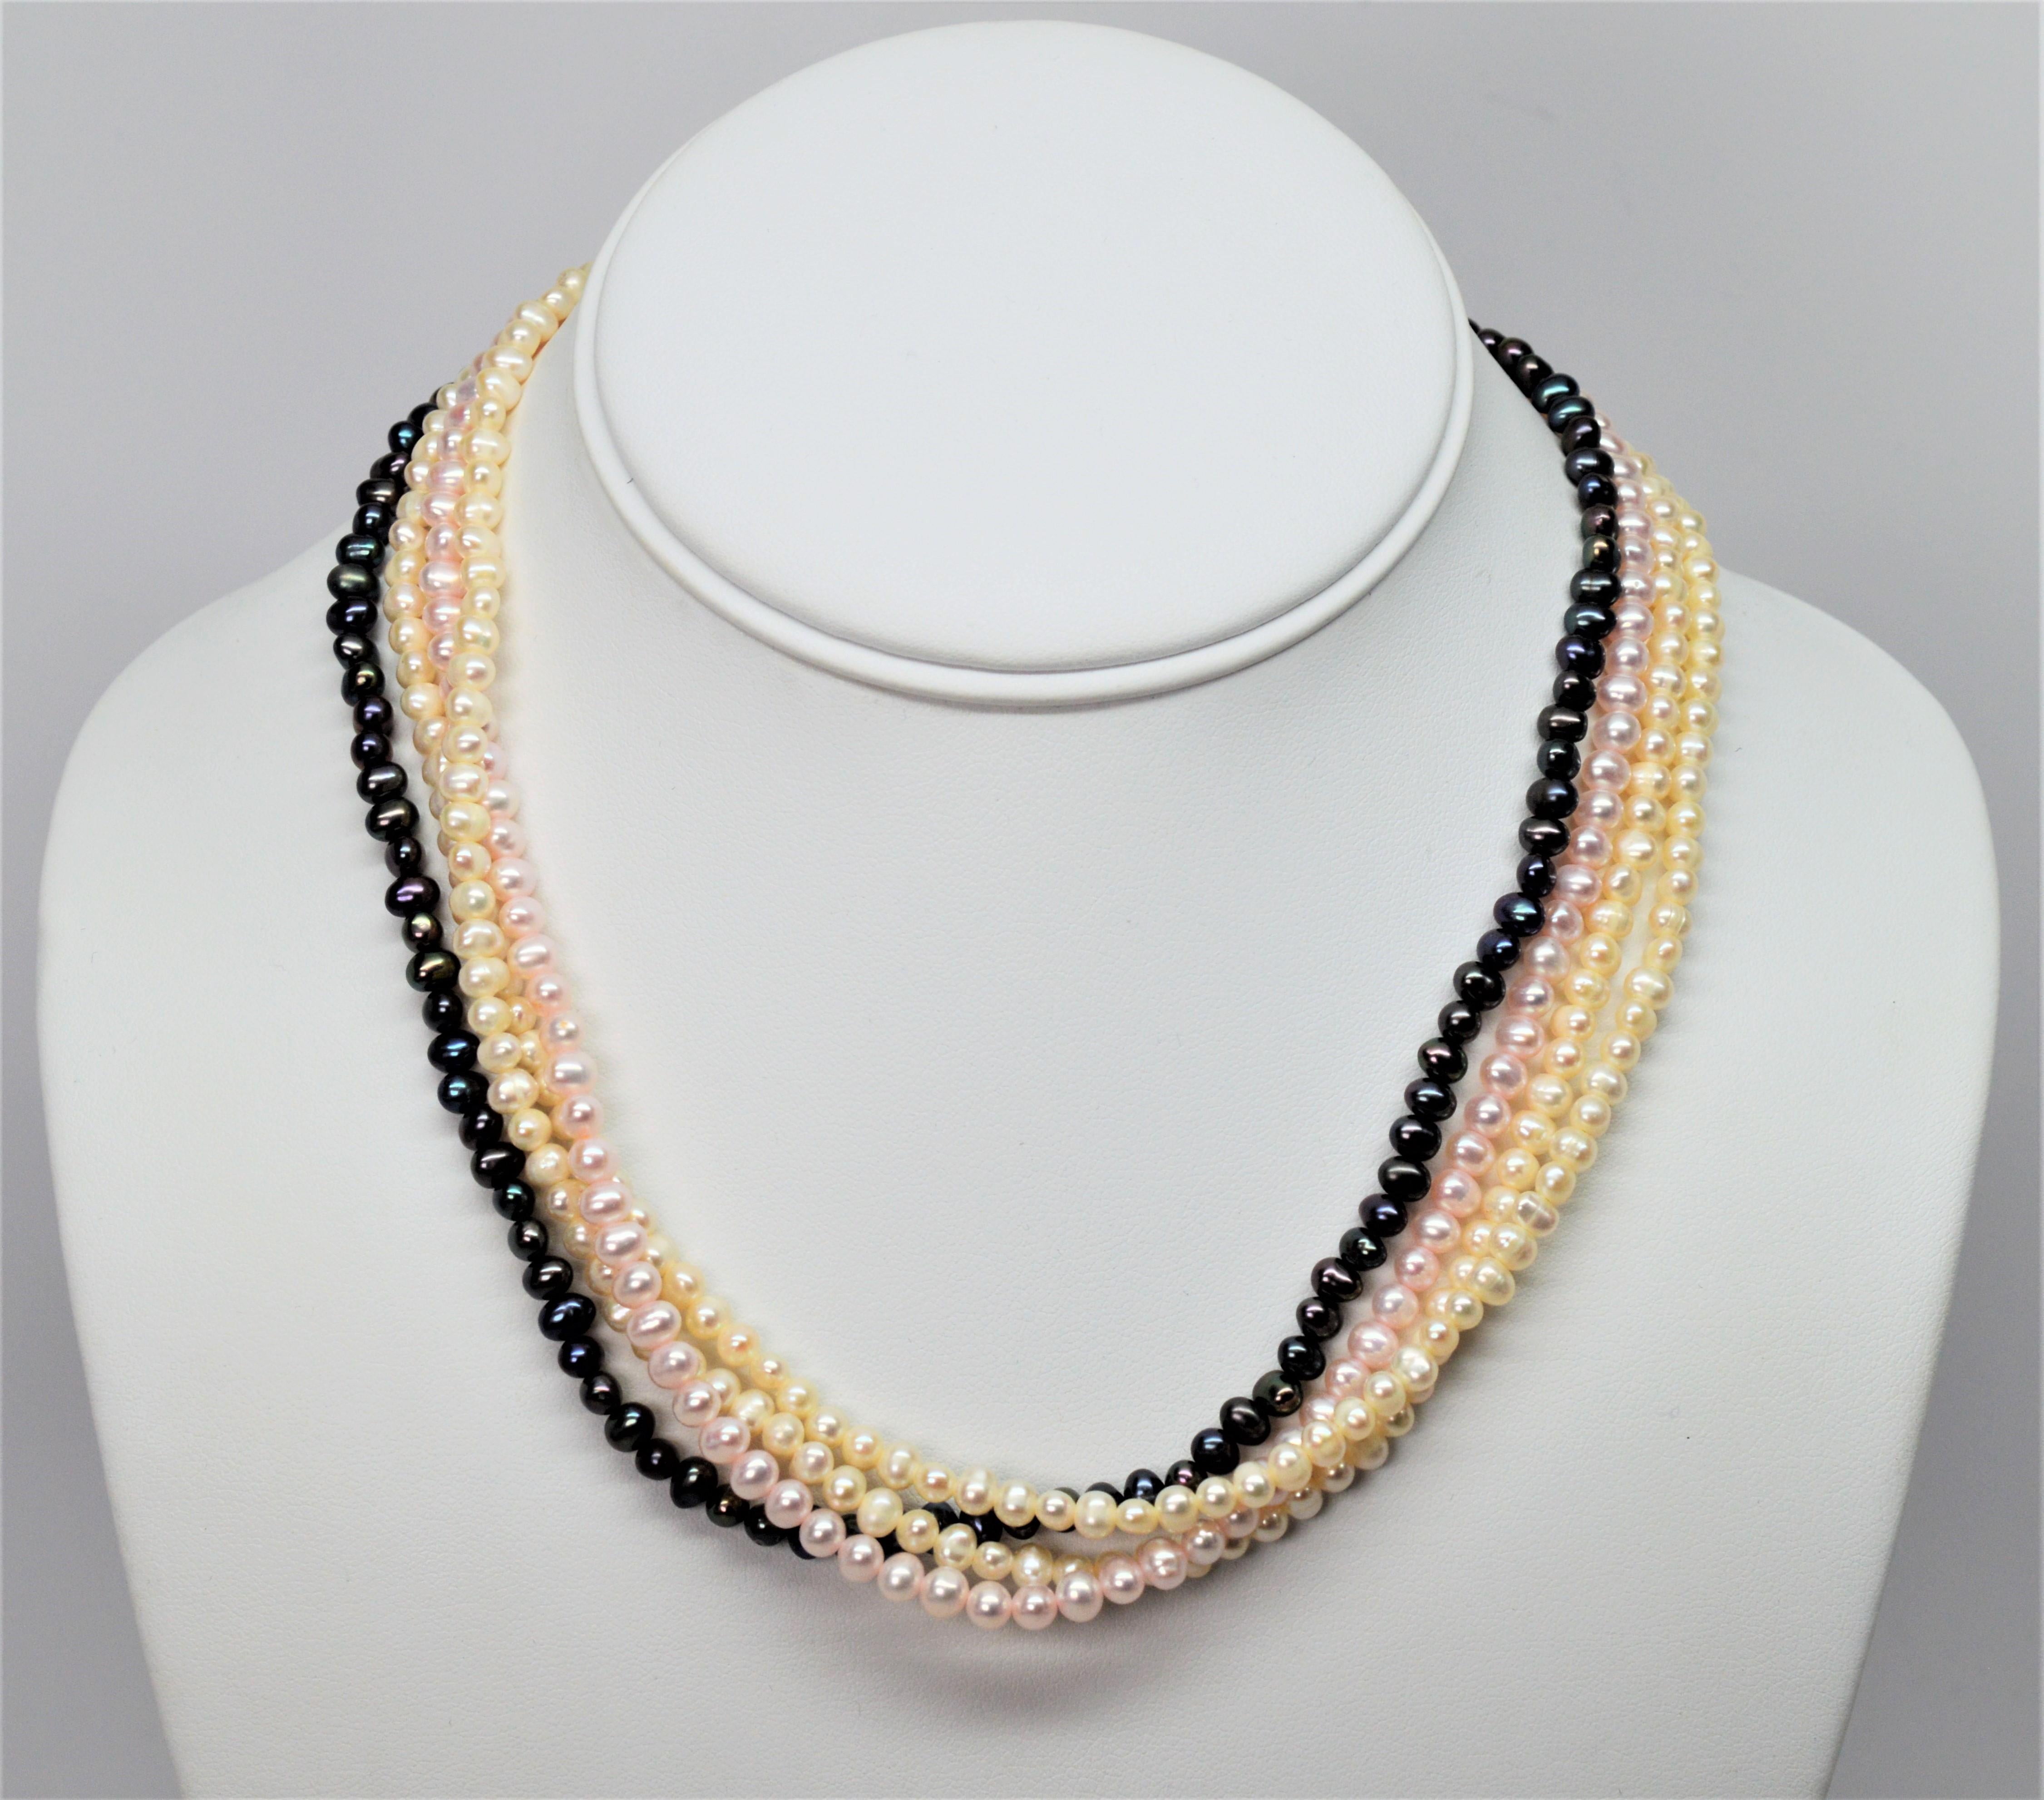 Klassisches Cremeweiß, zartes Rosarot und grau schillernde Akoya-Perlenstränge ergeben eine reizende Perlenkette, die als Drapierung oder bunter Twist getragen werden kann.  Sechzehn Zentimeter 16